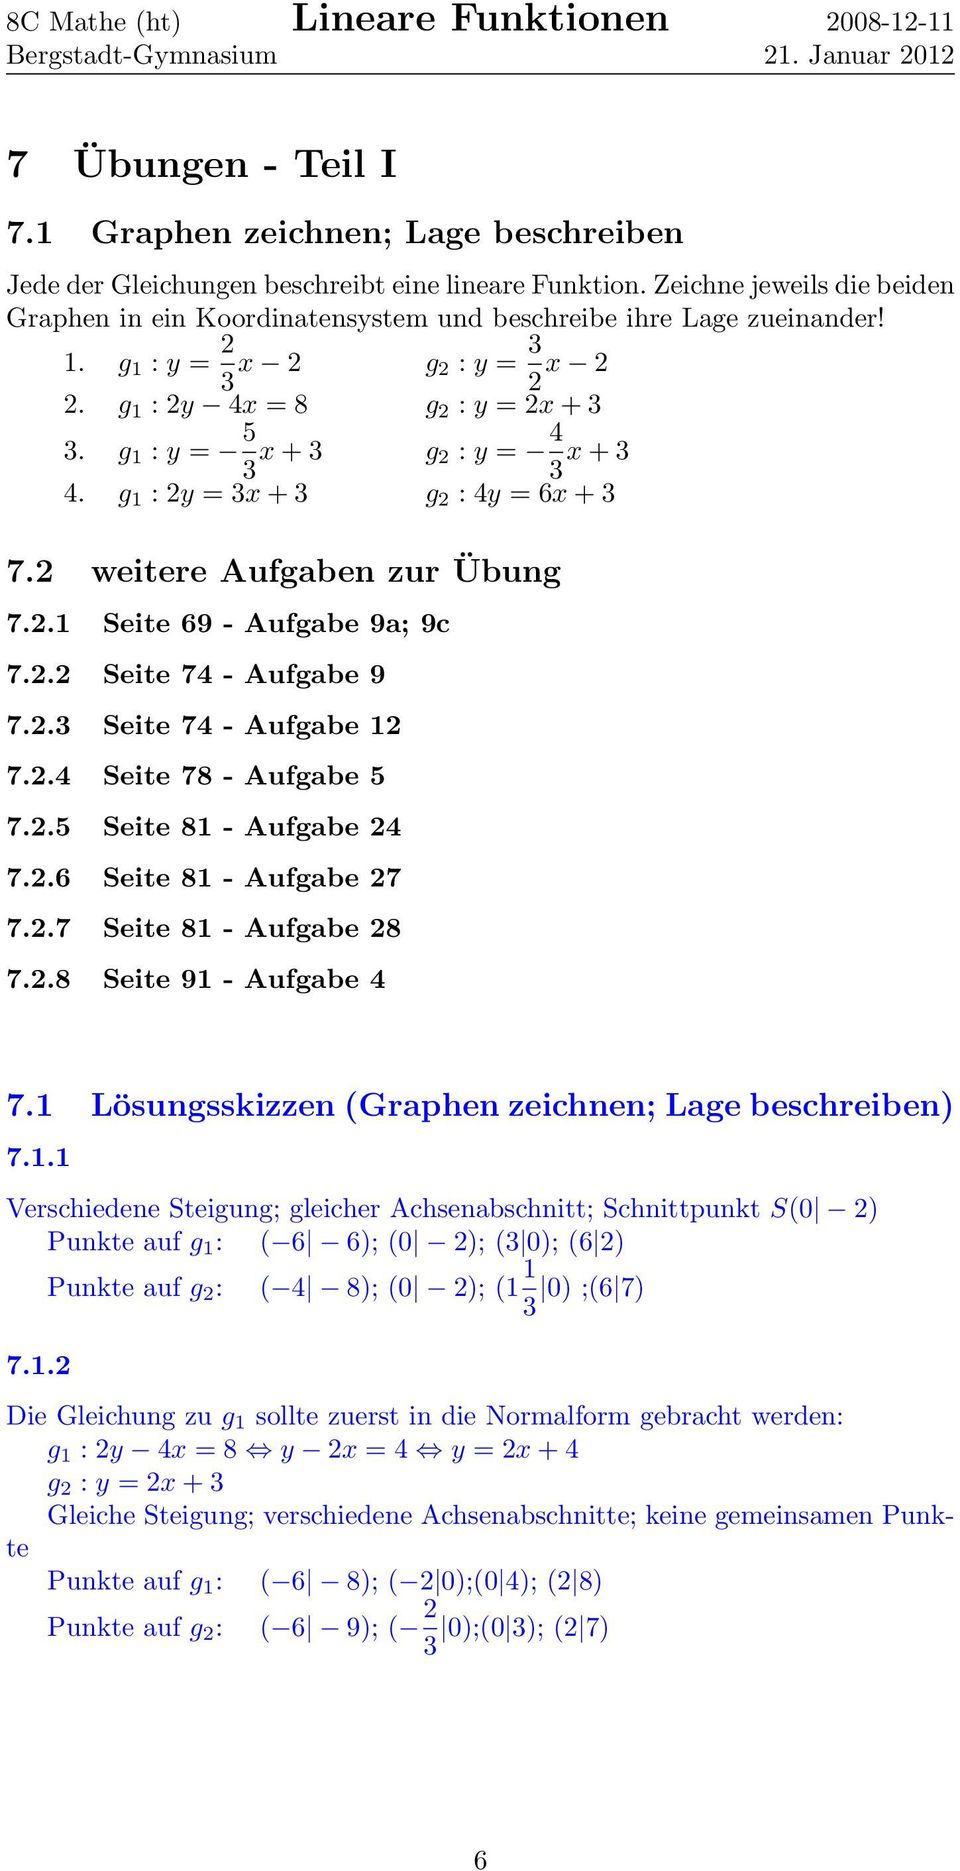 g 1 : y = 5 3 x + 3 g 2 : y = 4 3 x + 3 4. g 1 : 2y = 3x + 3 g 2 : 4y = 6x + 3 7.2 weitere Aufgaben zur Übung 7.2.1 Seite 69 - Aufgabe 9a; 9c 7.2.2 Seite 74 - Aufgabe 9 7.2.3 Seite 74 - Aufgabe 12 7.